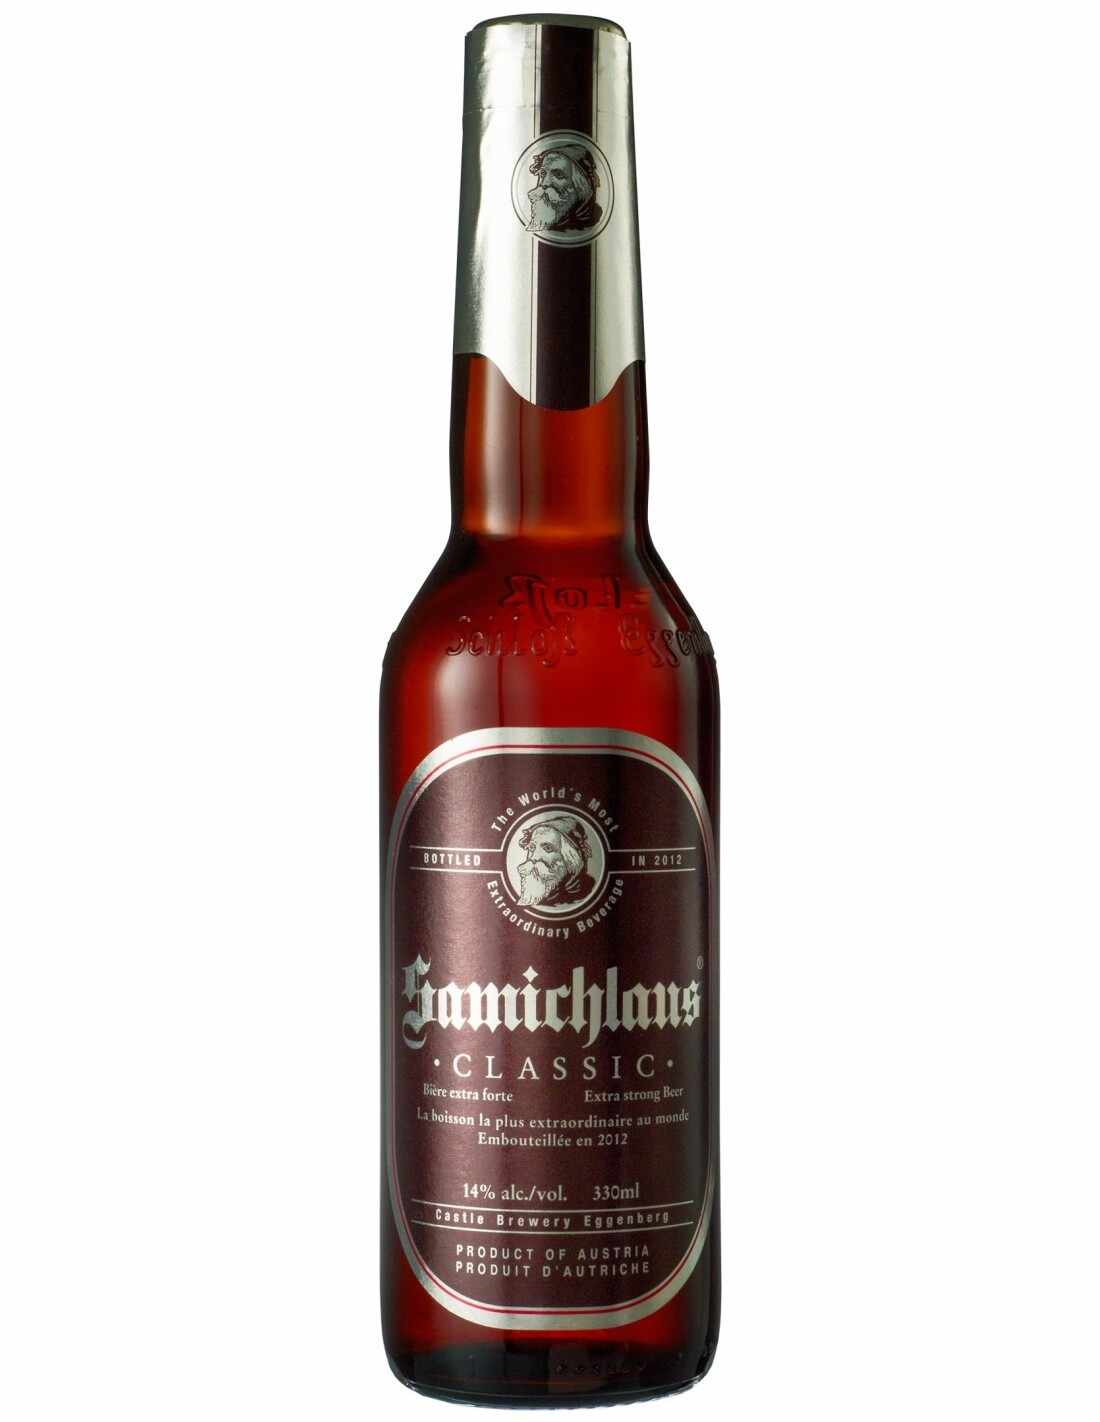 Bere bruna, filtrata Samichlaus, 14% alc., 0.33L, Germania